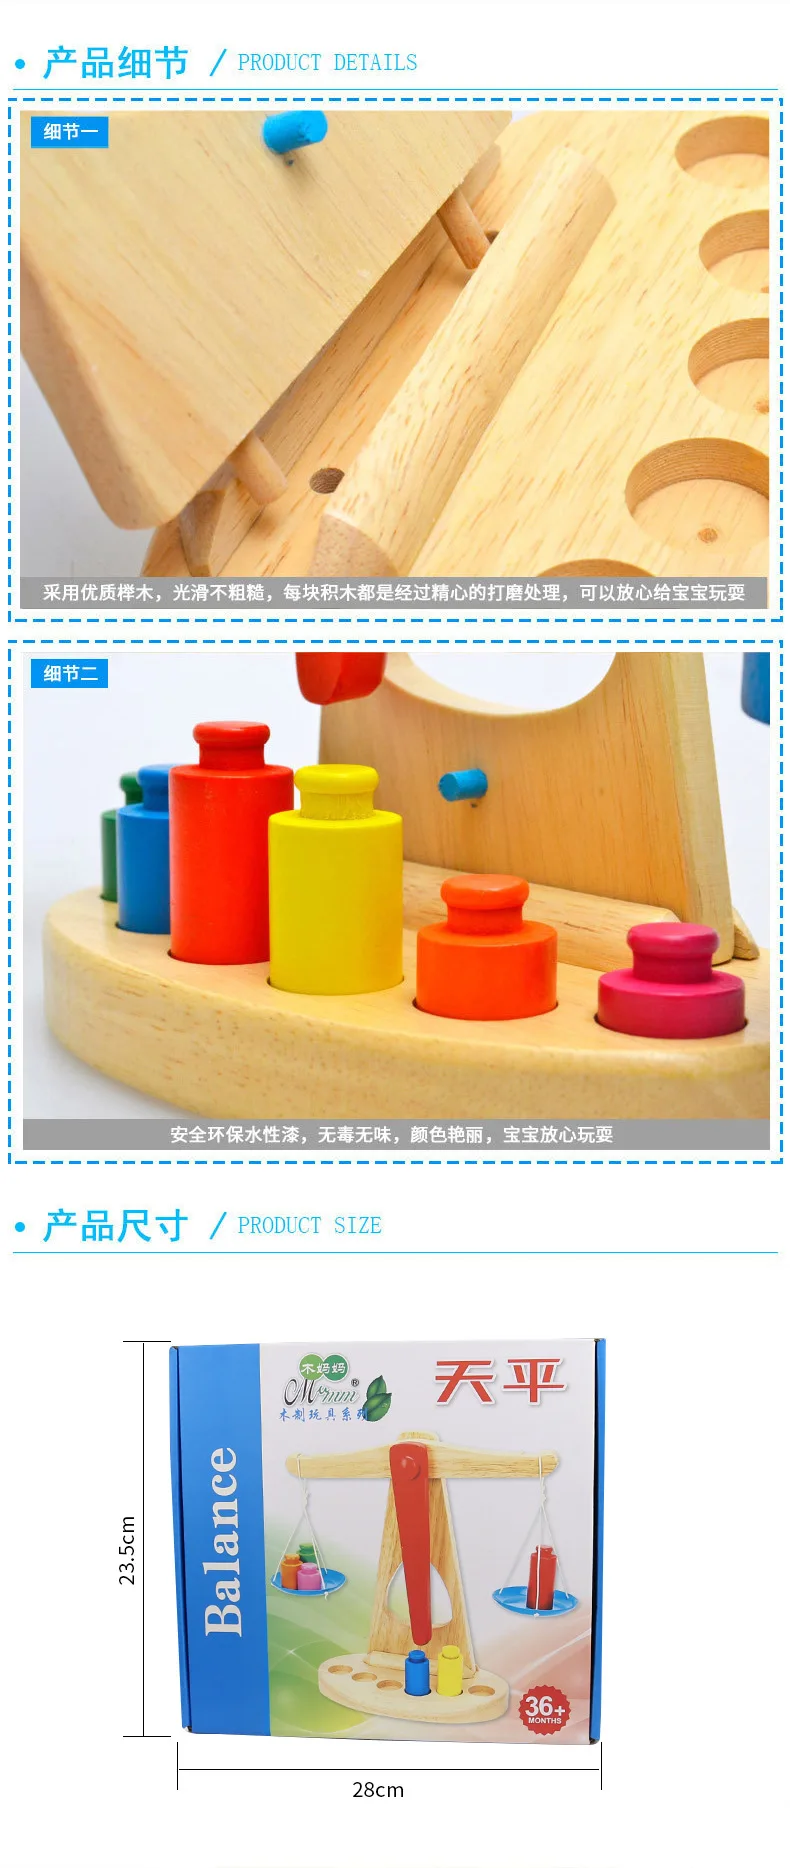 Новая обучающая игрушка Монтессори, маленькие деревянные игрушечные весы с 6 весами для детей